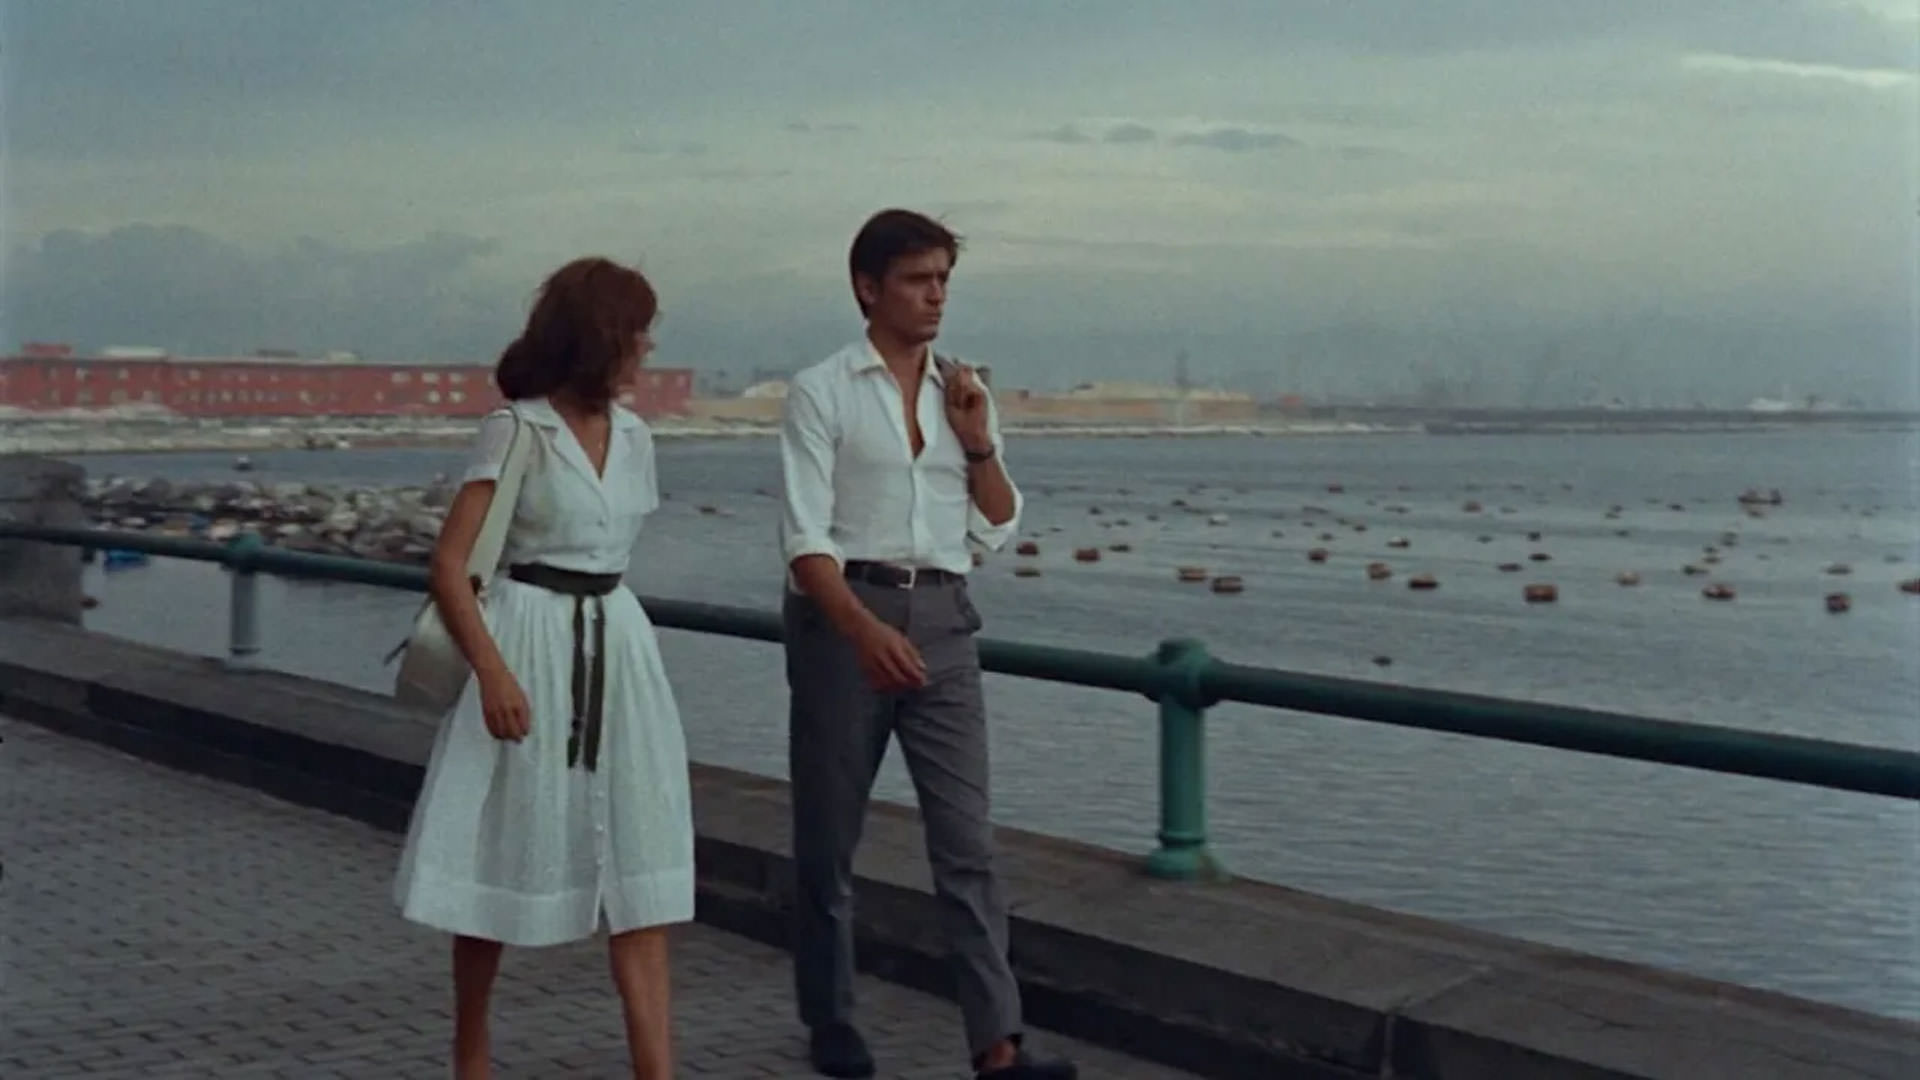 آلن دلون و ماری لافوره با لباس‌های سفید در صحنه‌ای از فیلم ظهر بنفش رنه کولمن در کنار دریا قدم می‌زنند.